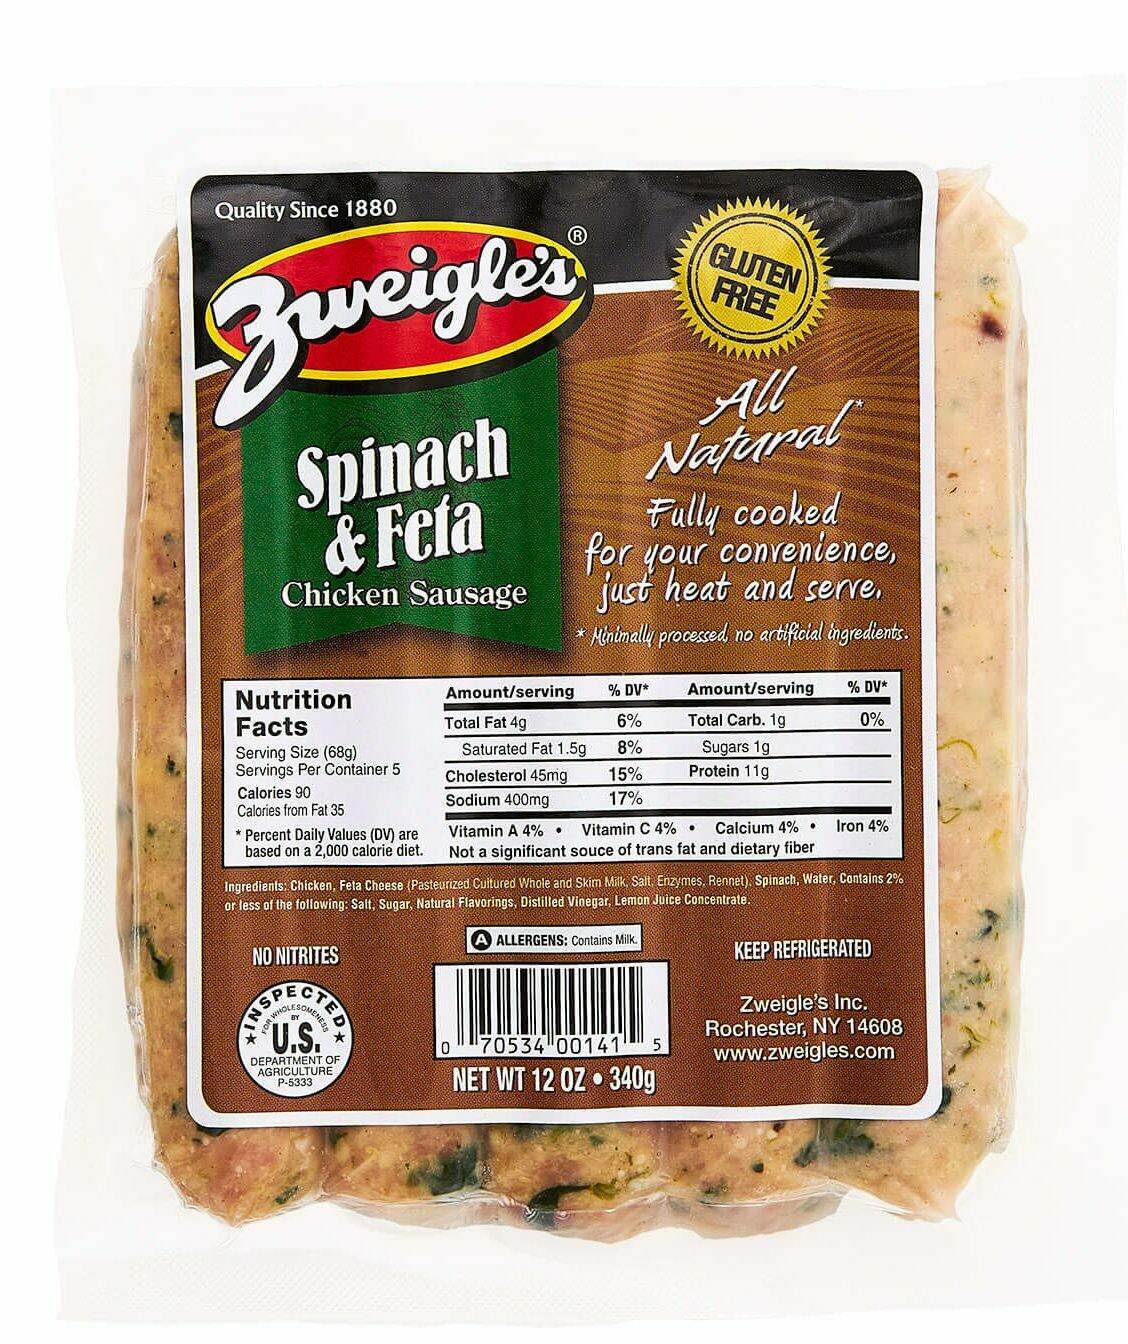 Zweigle's Chicken Sausage 4ct - Spinach & Feta